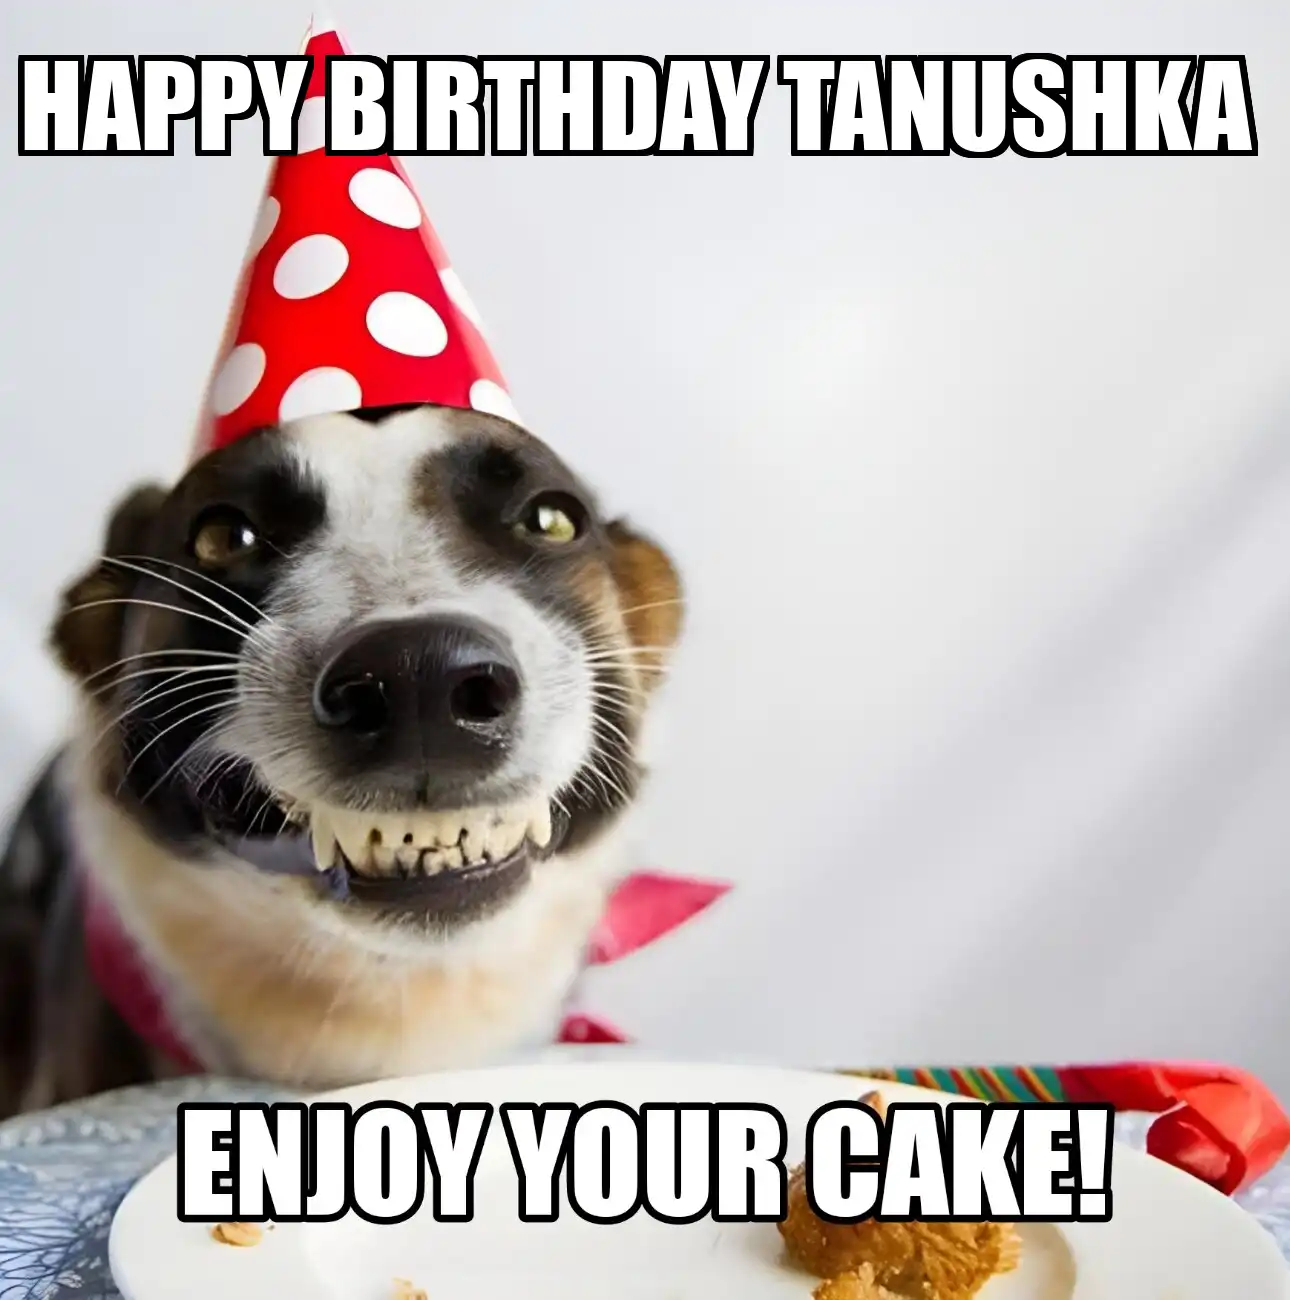 Happy Birthday Tanushka Enjoy Your Cake Dog Meme